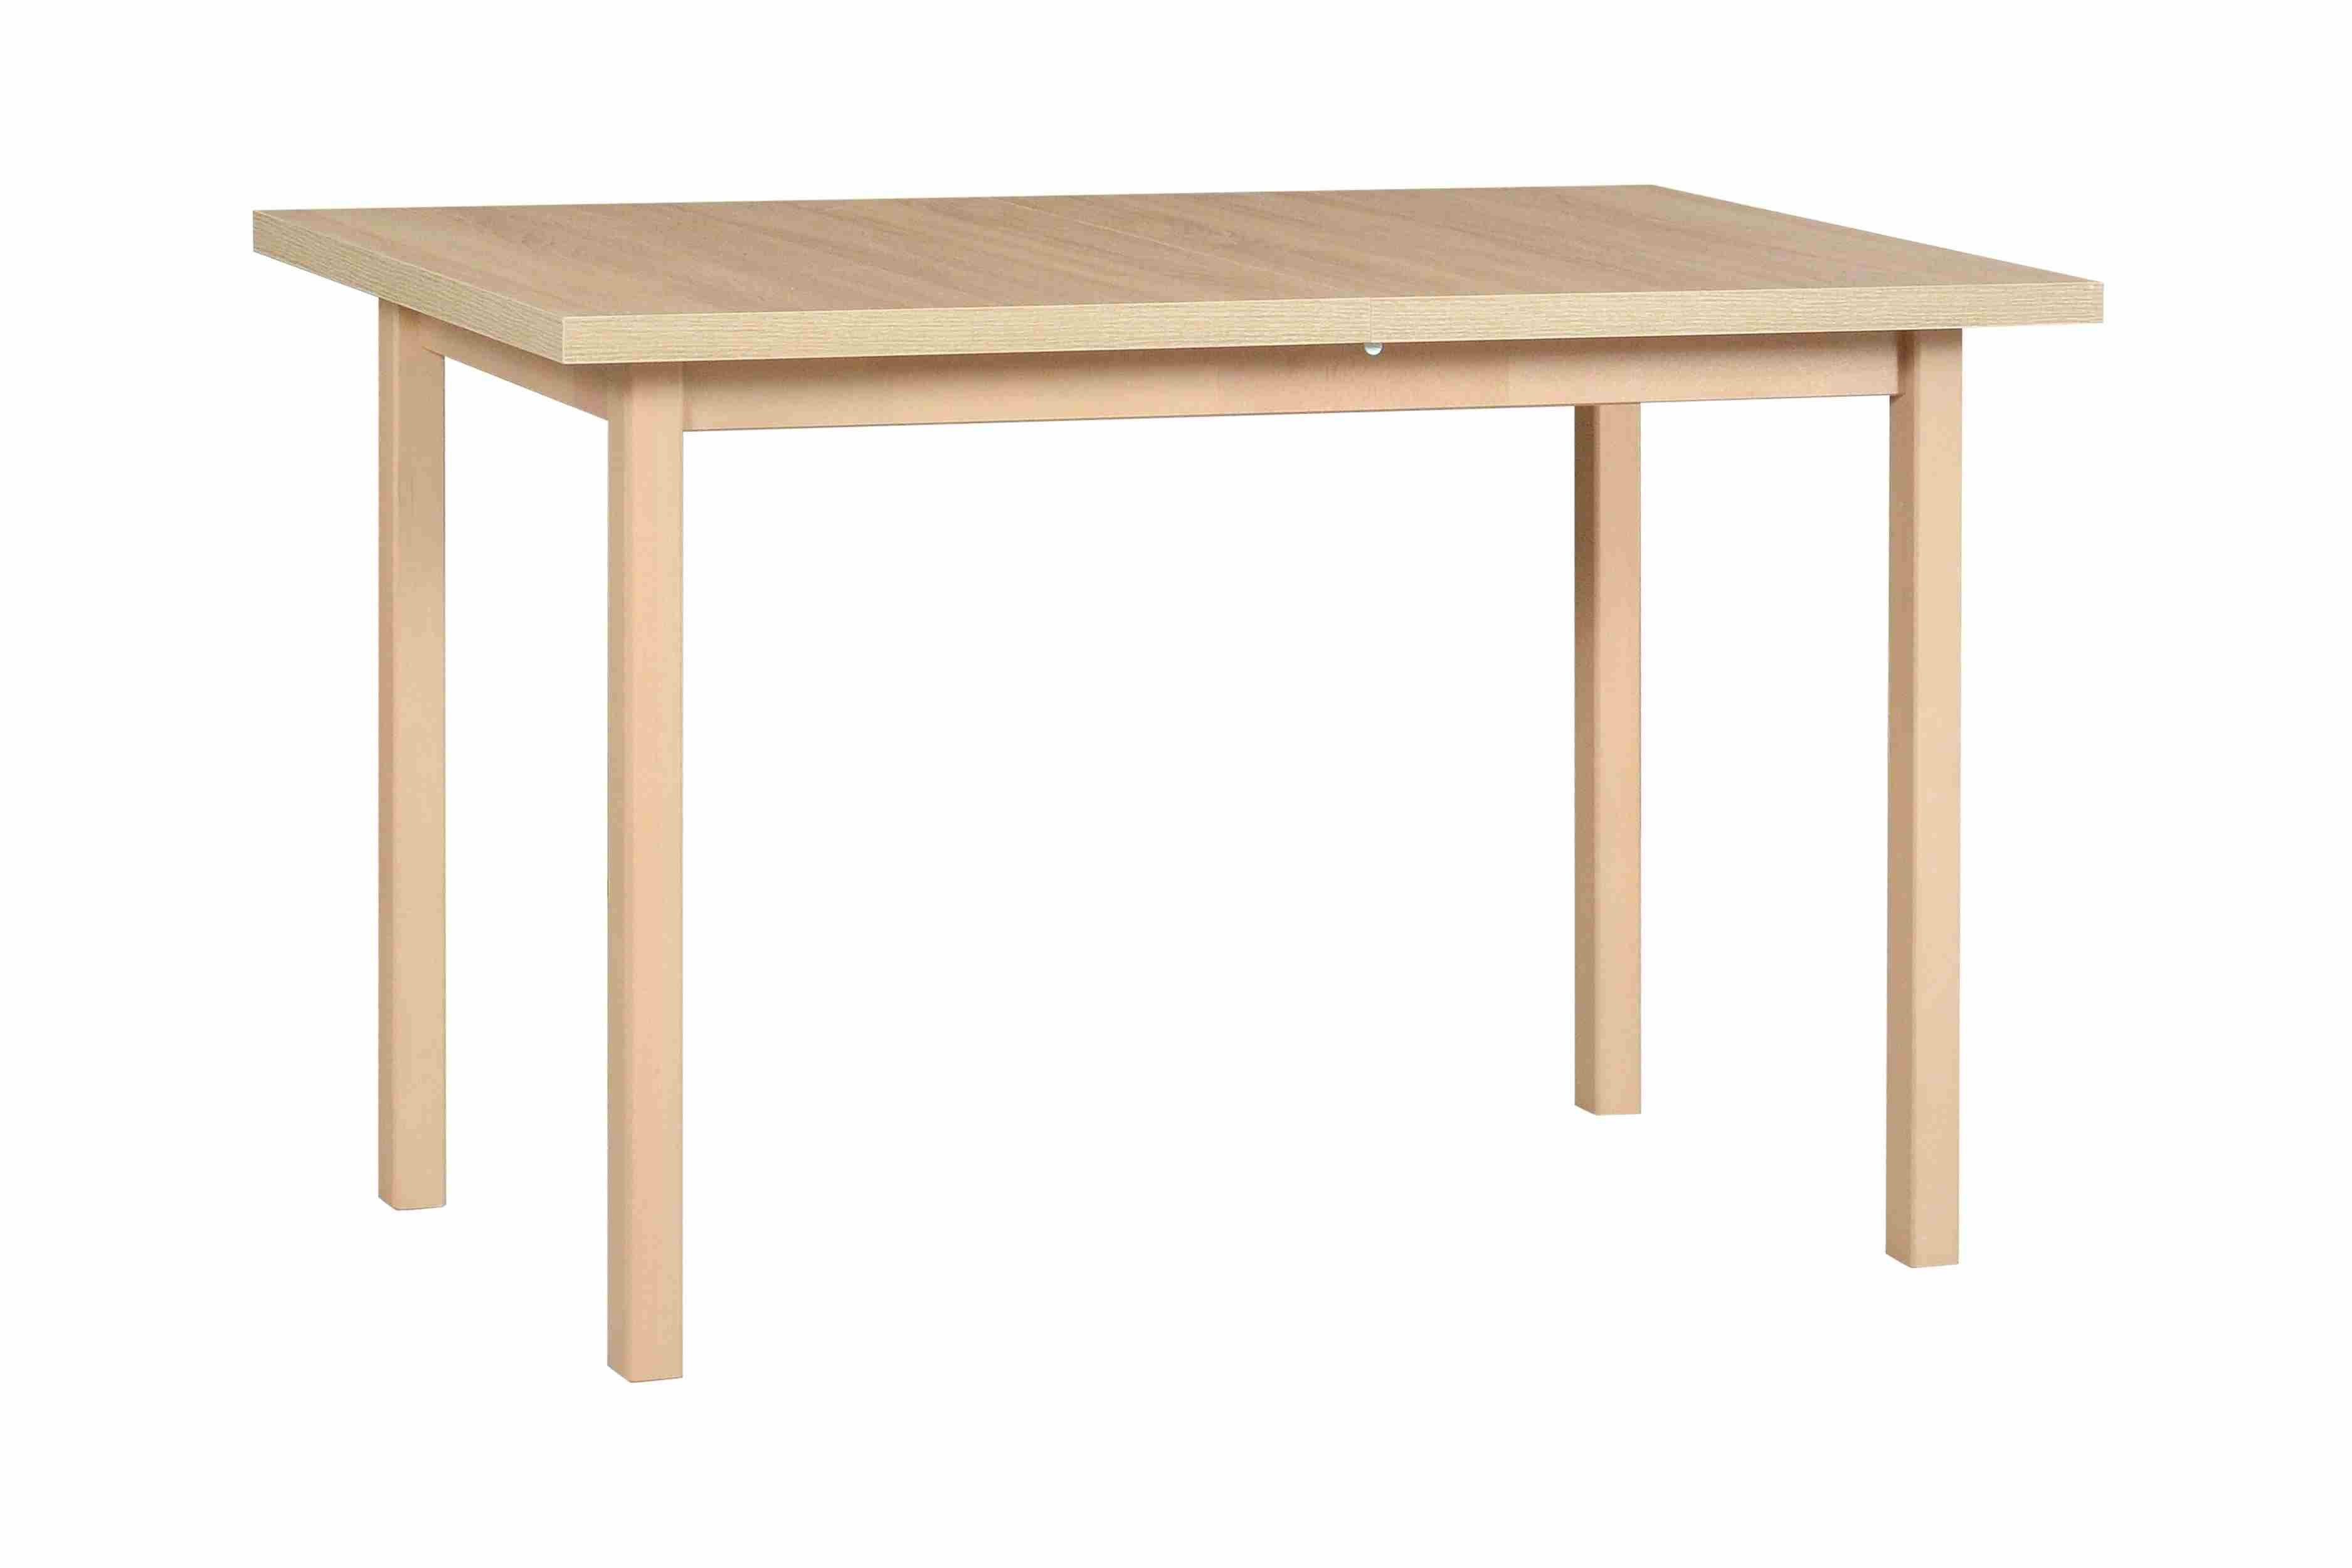 Furnix Esstisch Mekkie-3 Küchentisch 70x120 cm mit Holzgestell und Beine Buche massiv, nachhaltig & robust, strapazierfähige Möbelplatte